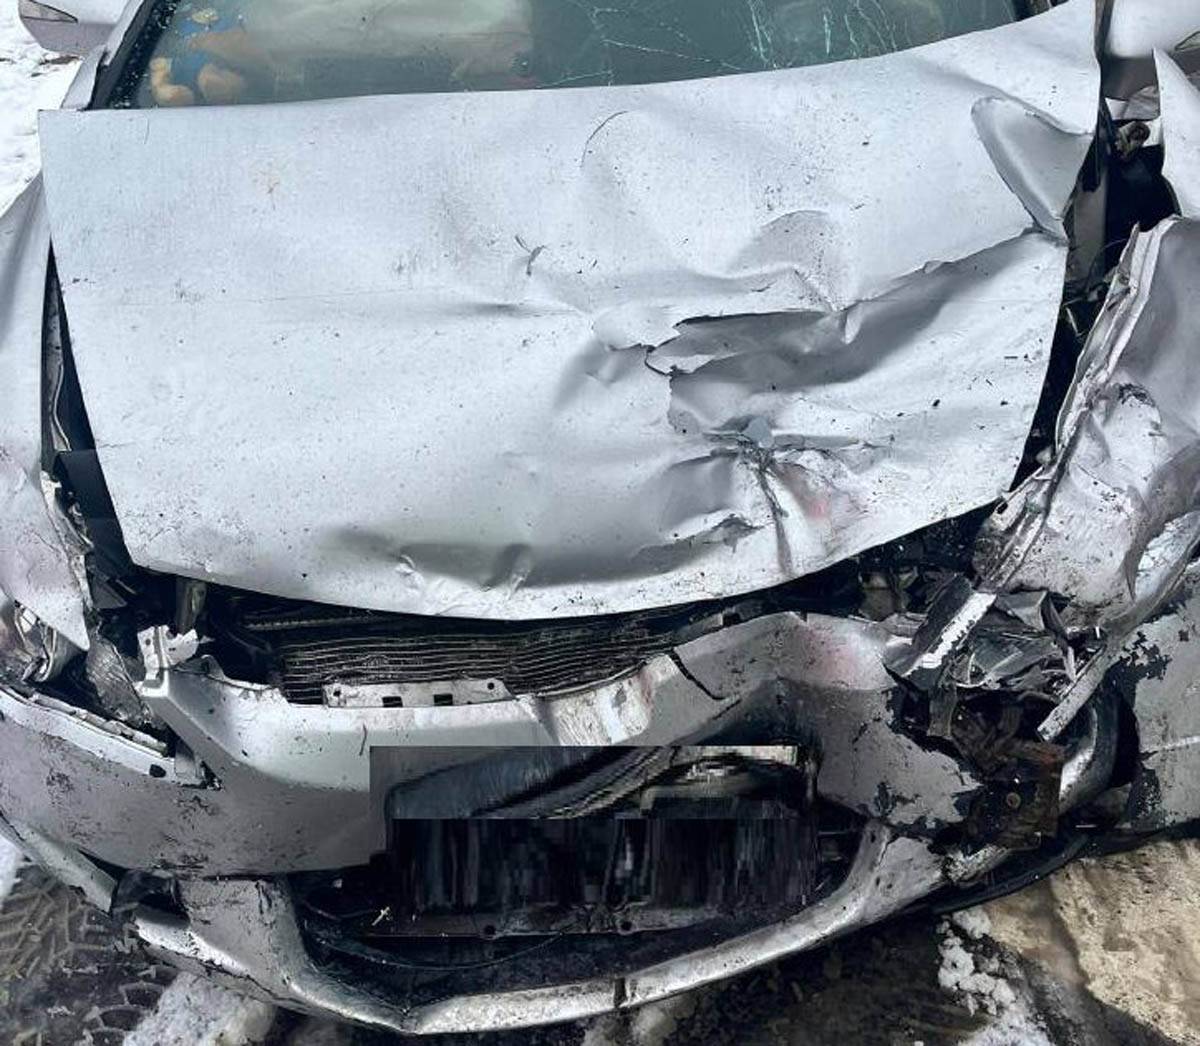 63-летний пассажир автомобиля с закрытой черепно-мозговой травмой доставлен в Боровичскую ЦРБ.